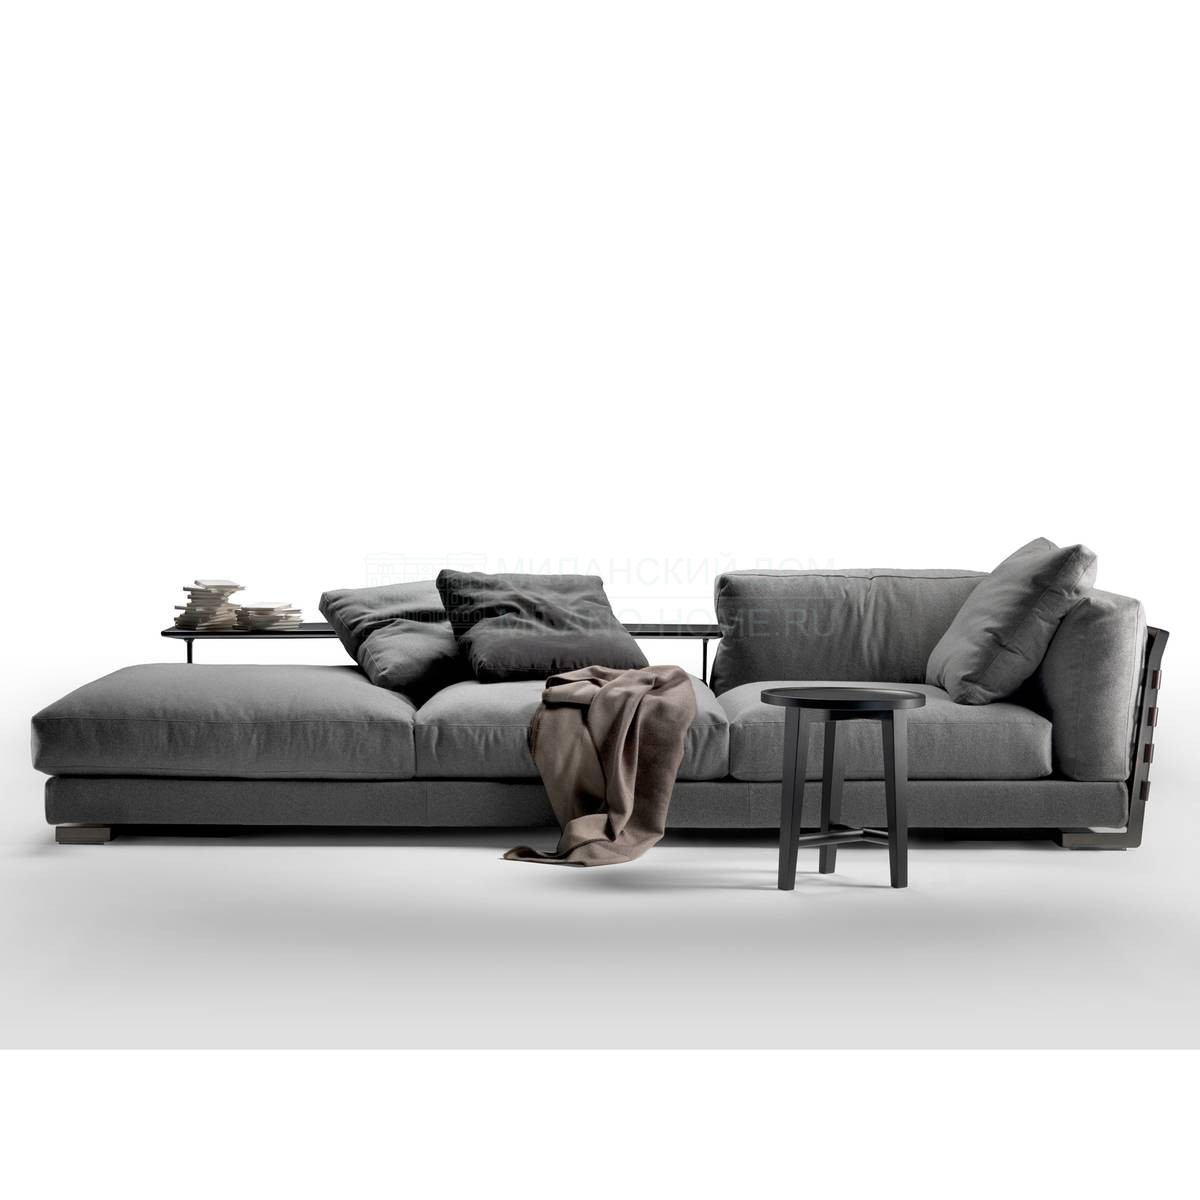 Модульный диван Cestone 09/sofa из Италии фабрики FLEXFORM